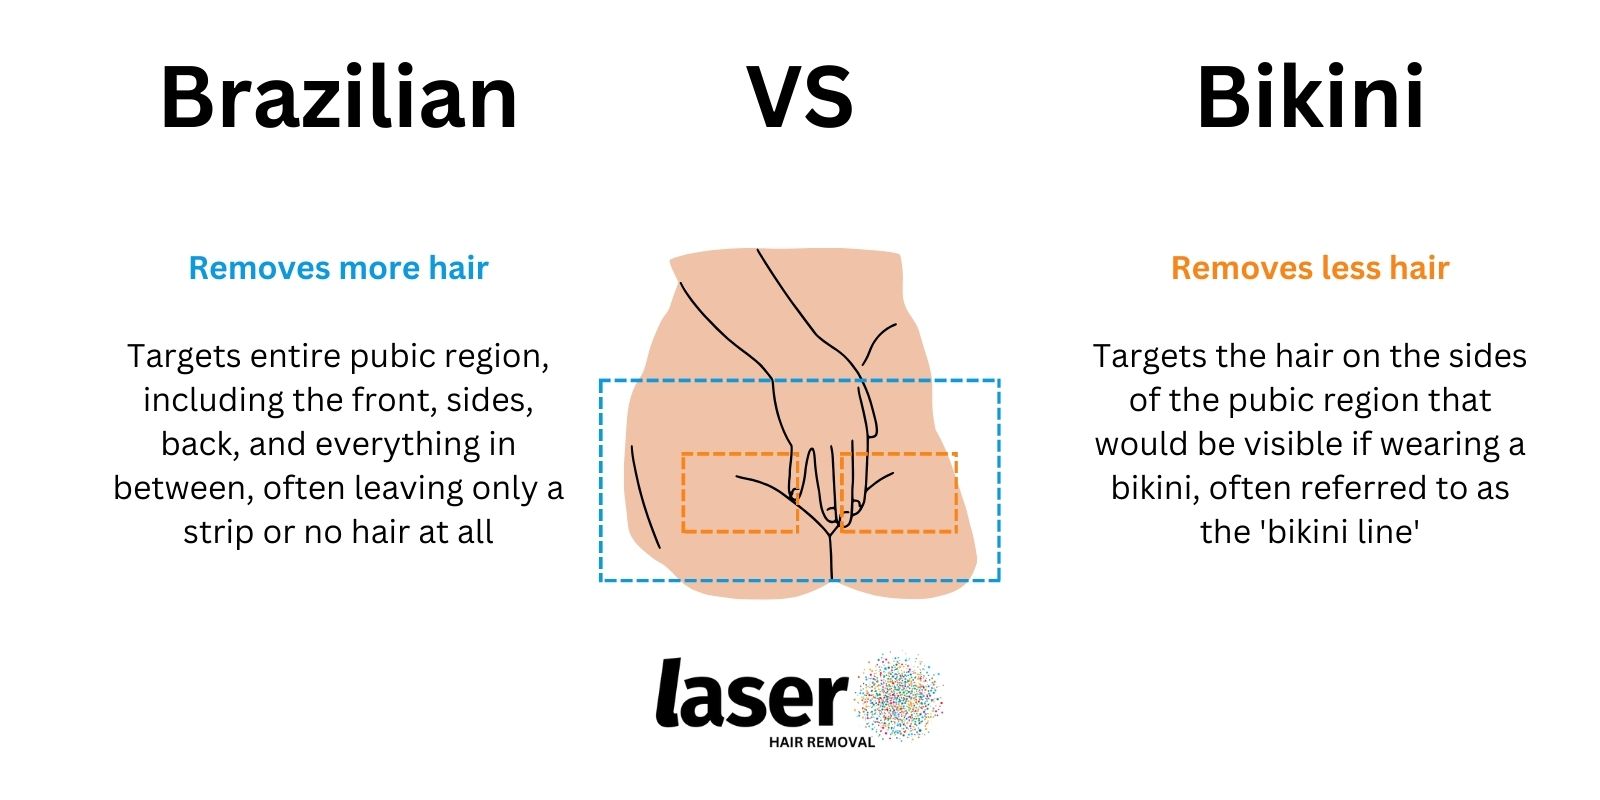 Brazilian laser hair removal vs Bikini laser hair removal